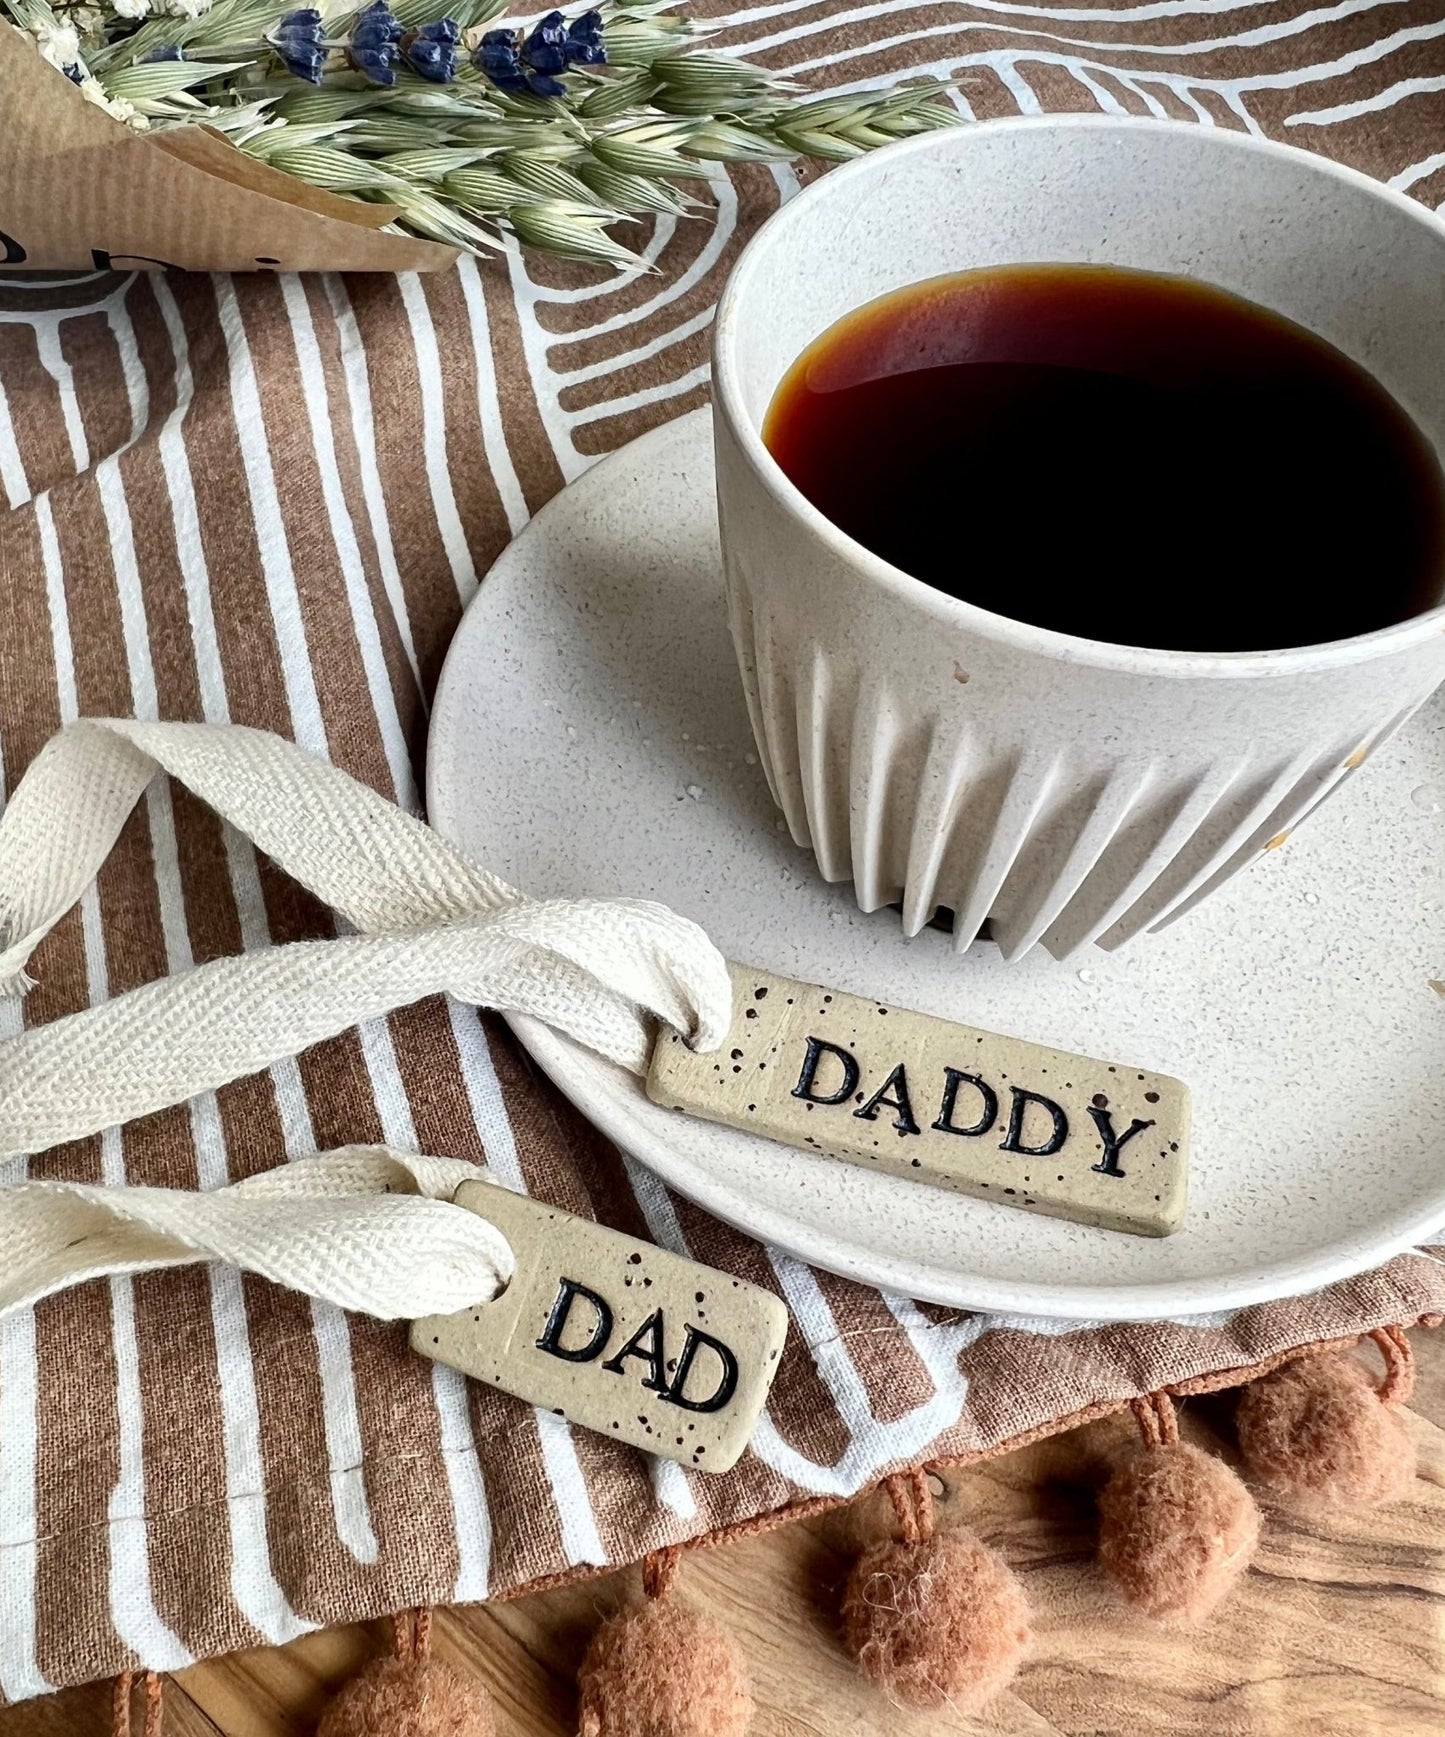 Dad | Ceramic tag